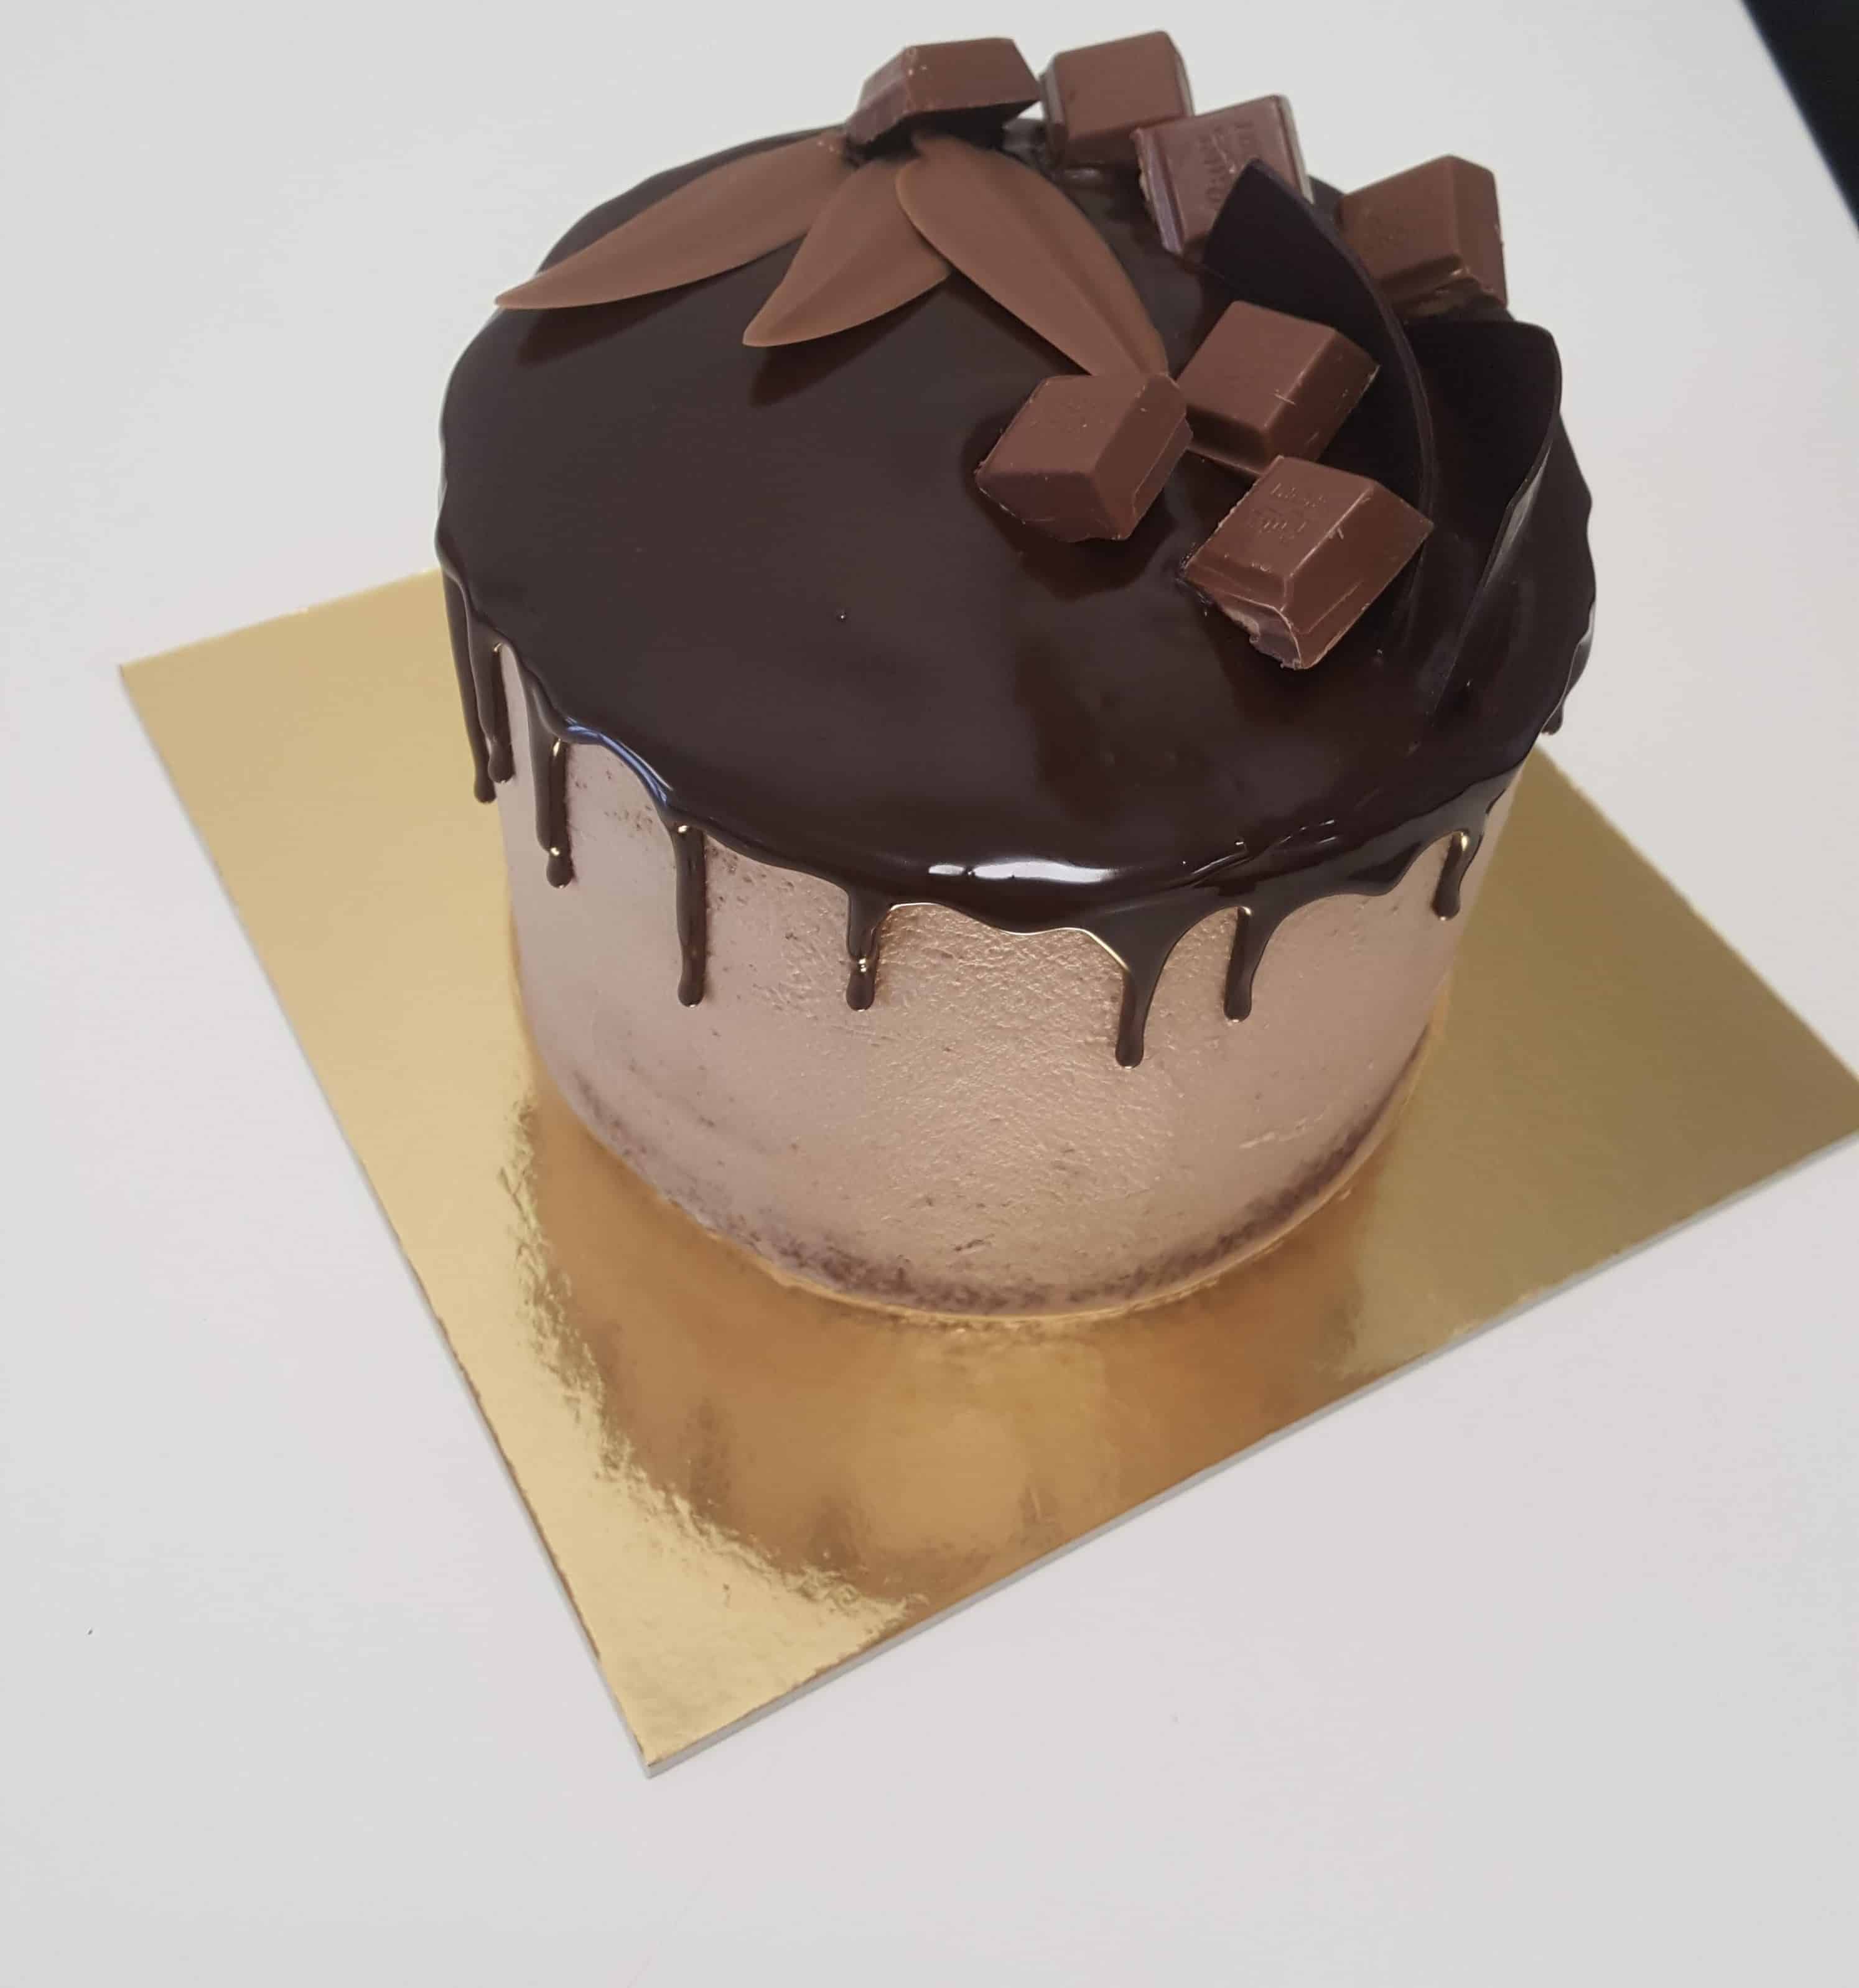 le migliori torte per compleanno al cioccolato